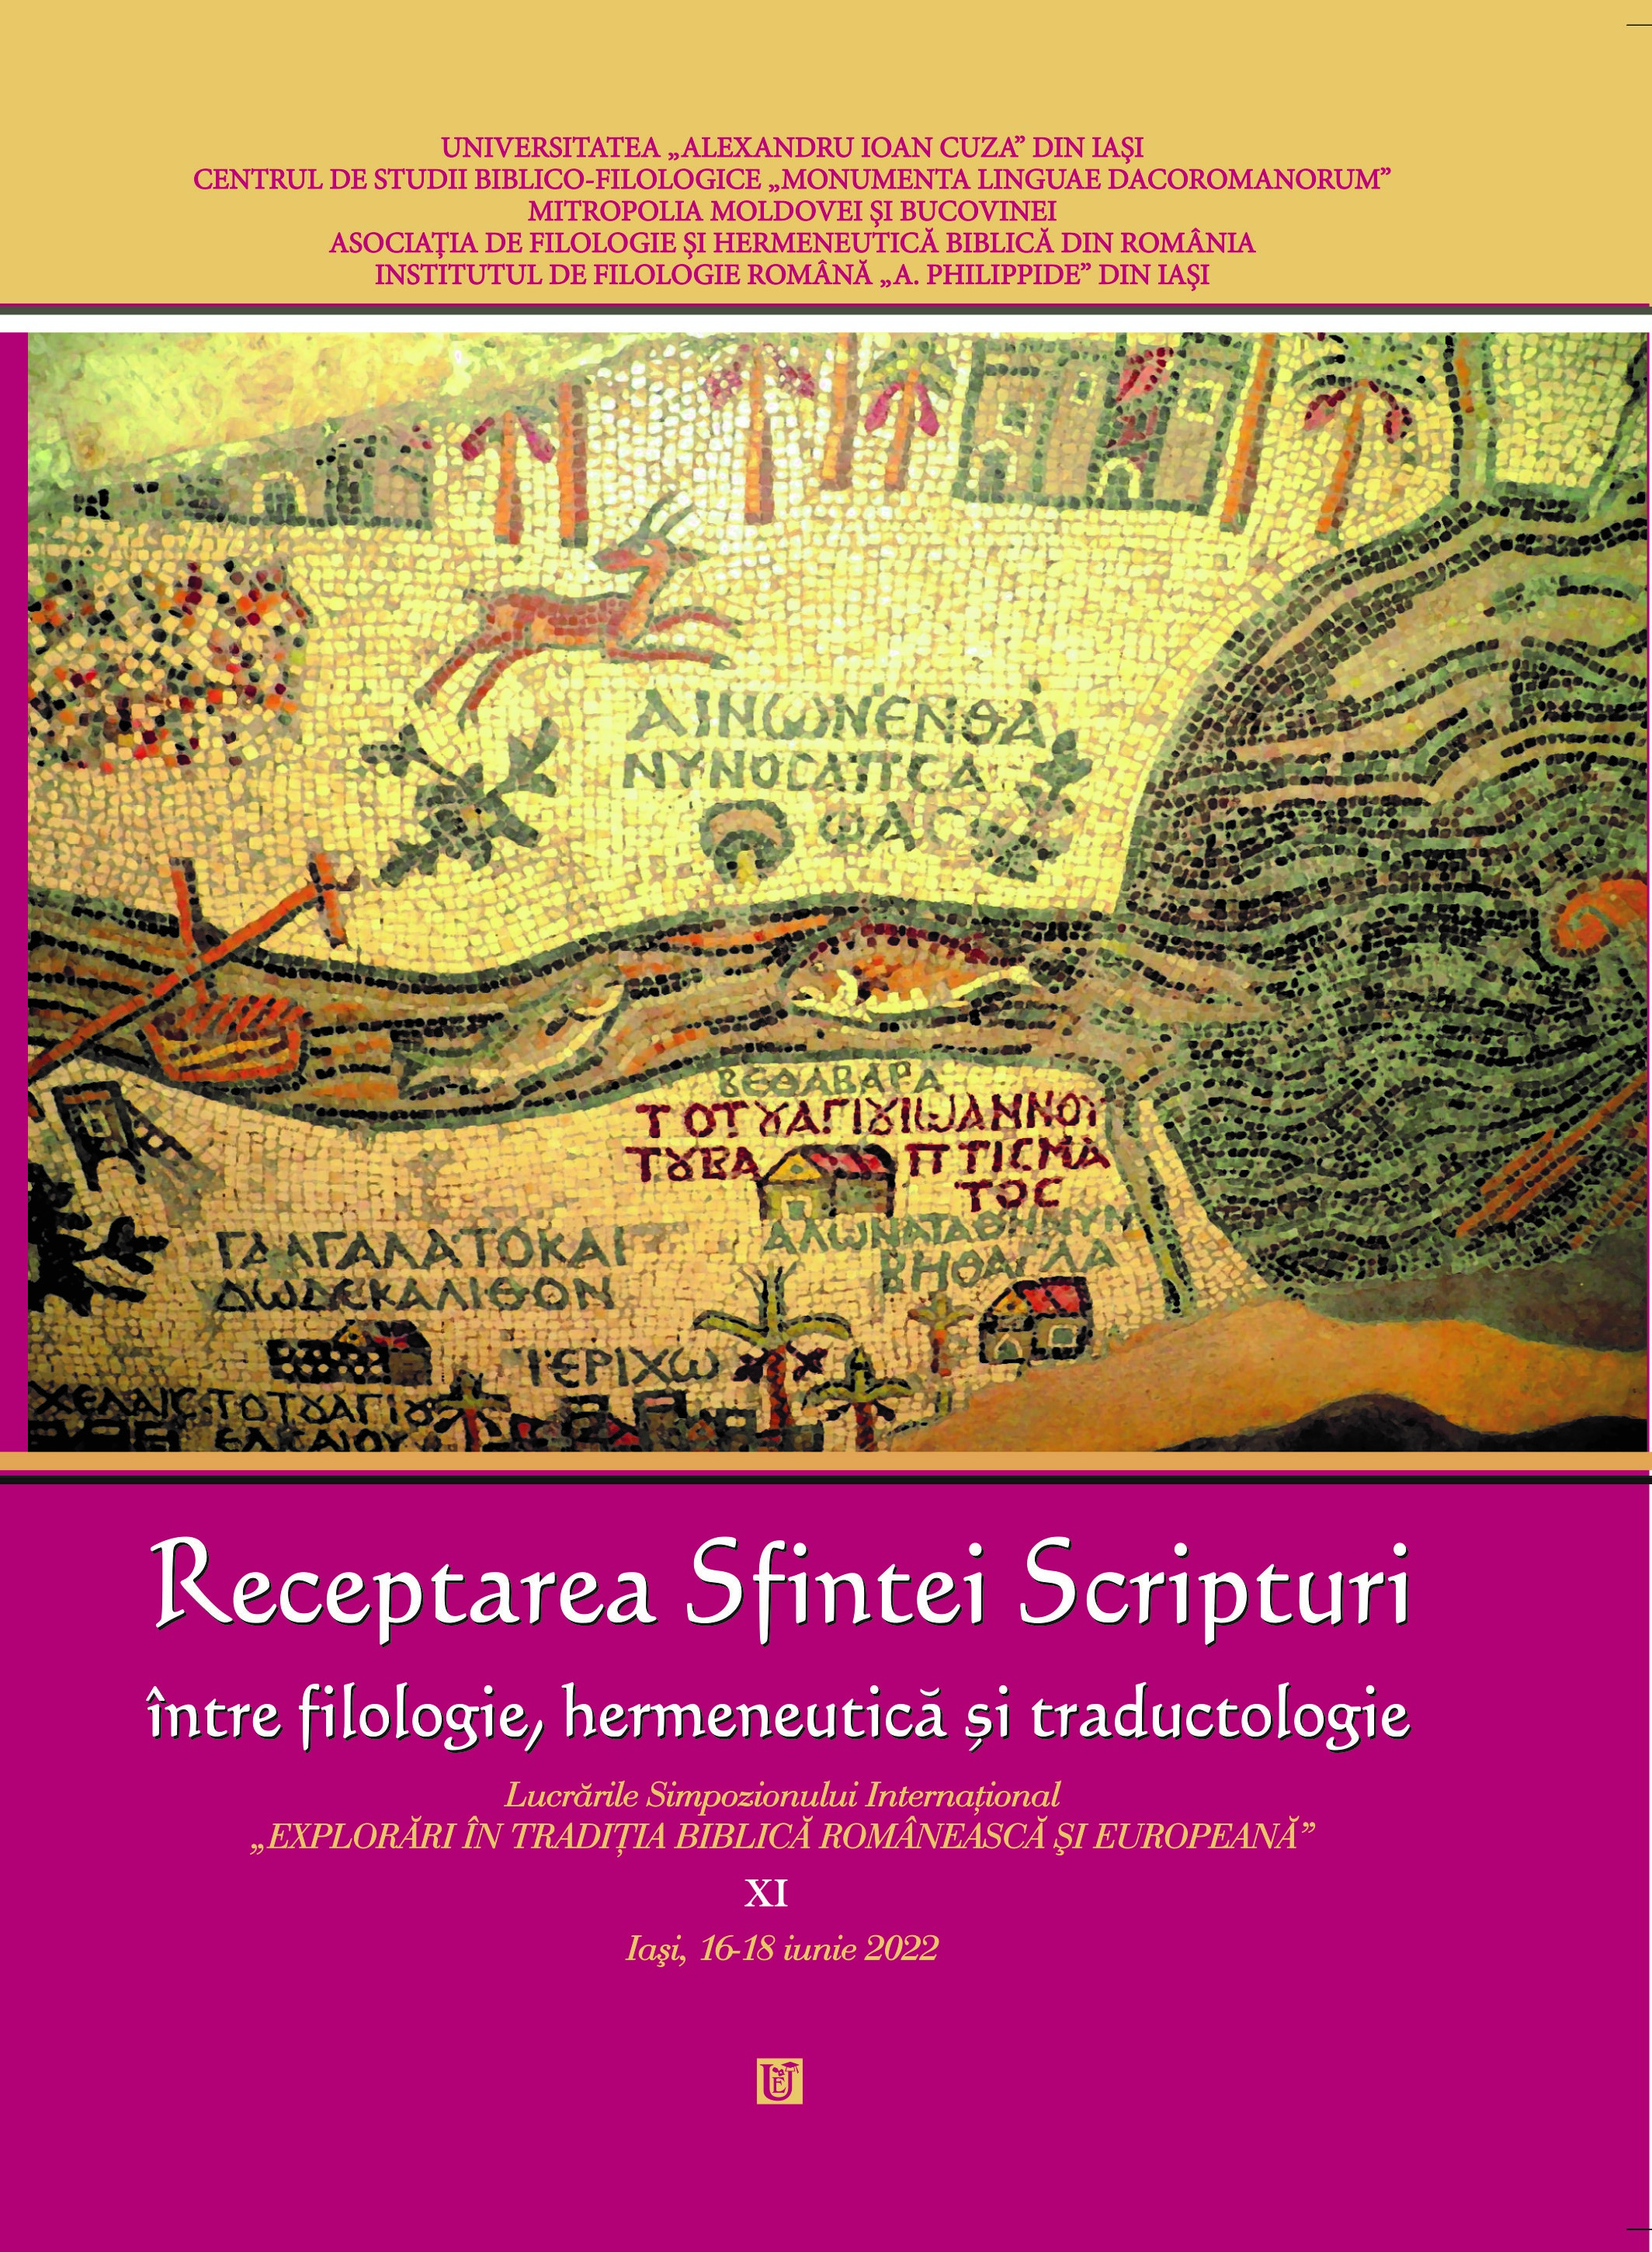 Tetraevangheliarele liturgice chirilice tipărite timpuriu publicate în ținuturile medievale românești în secolul al XVI-lea. Prezentare generală și analiza minologhioanelor